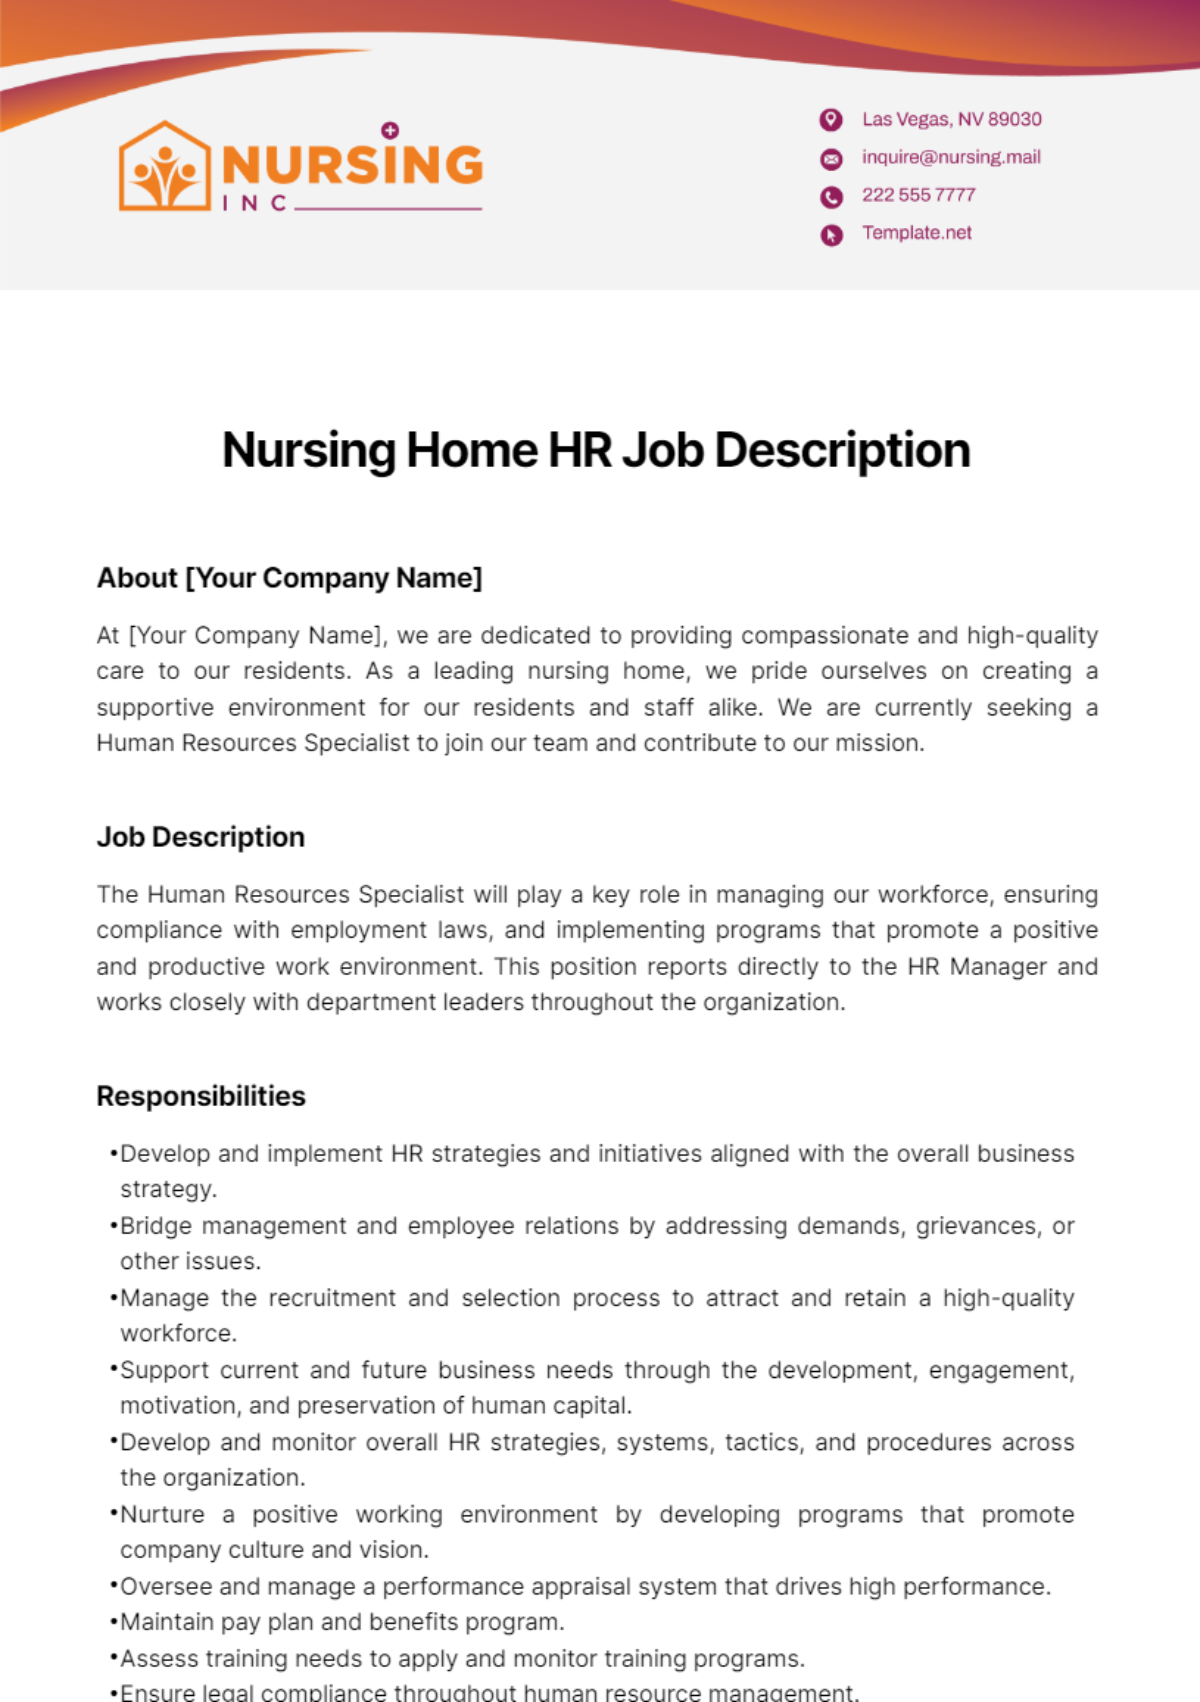 Nursing Home HR Job Description Template